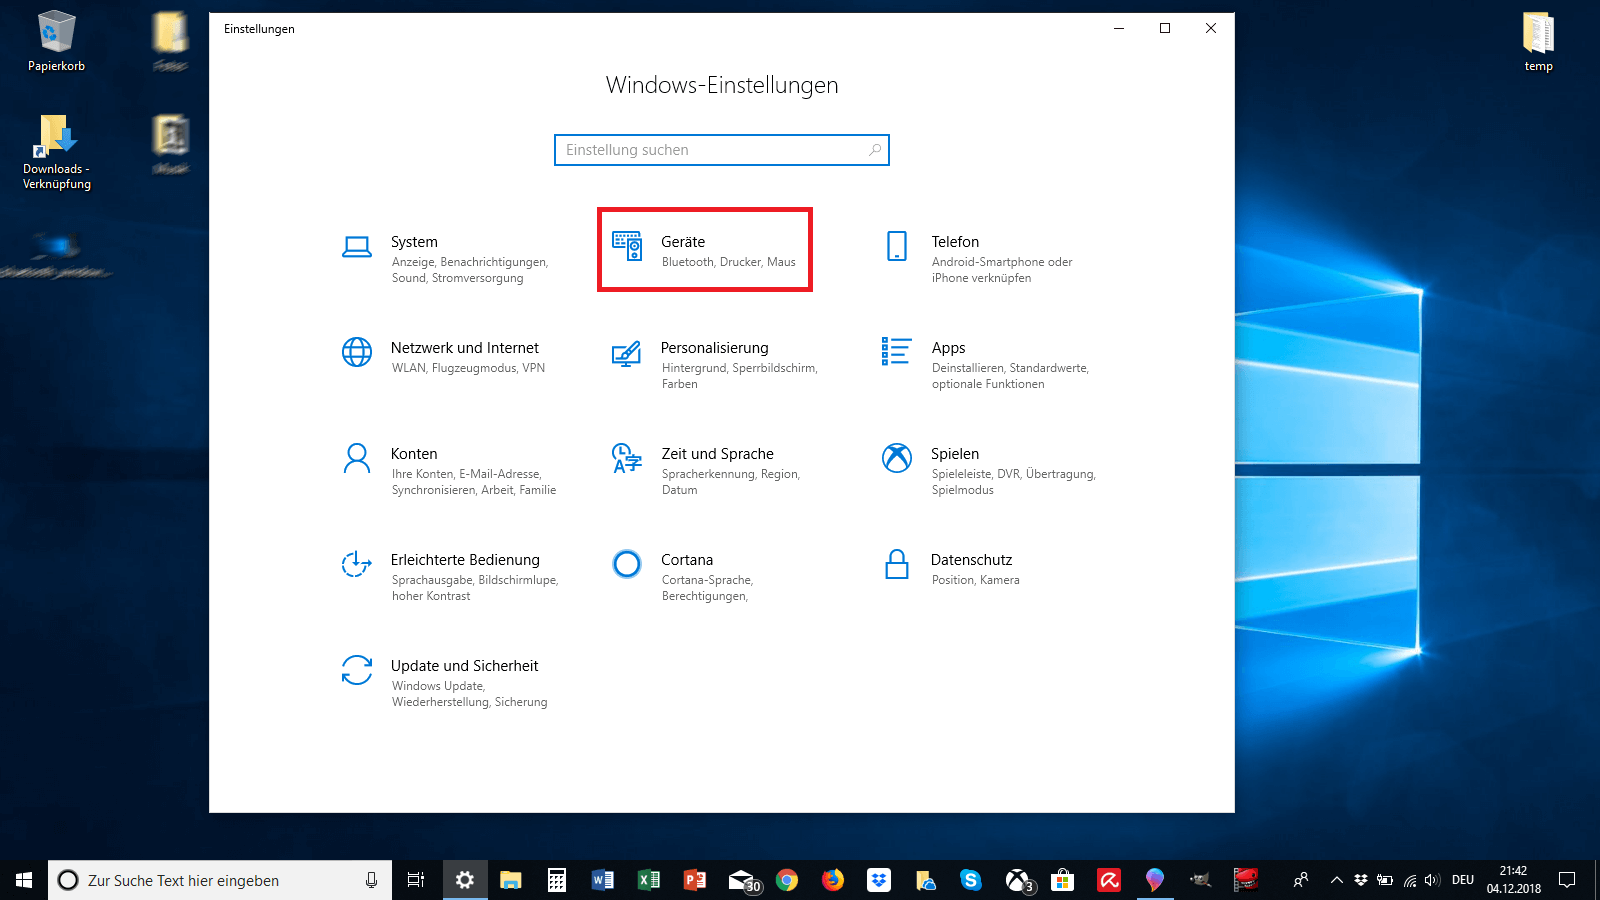 Einstellungen unter Windows 10